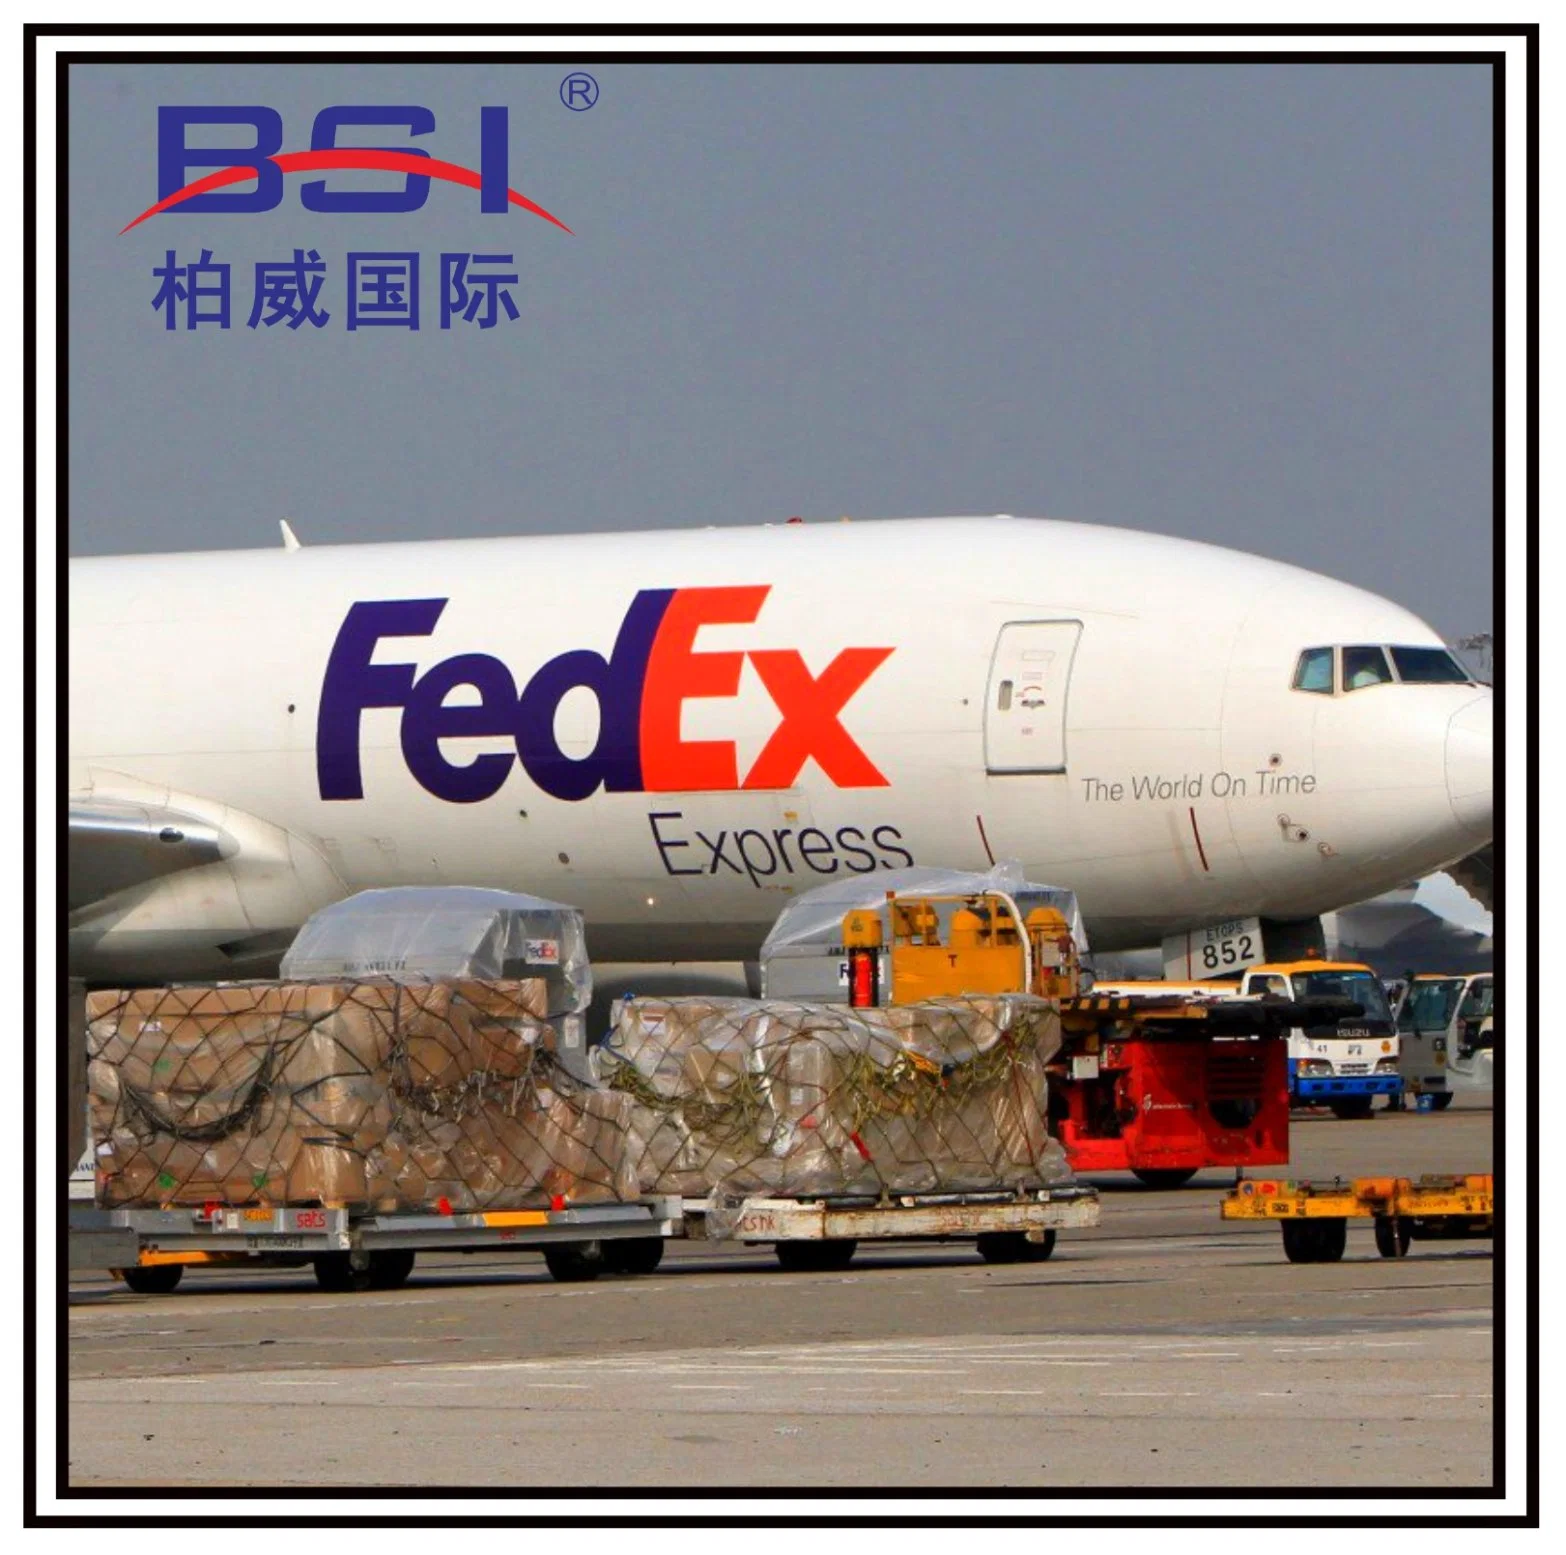 Größeres Bild anzeigenzum Vergleichhinzufügen charechinesische Spediteur Air Cargo Ship China nach Kanada Italien Spanien Deutschland UK VAE USA Versand durch Amazon Versand Durch Amazon Warehouse